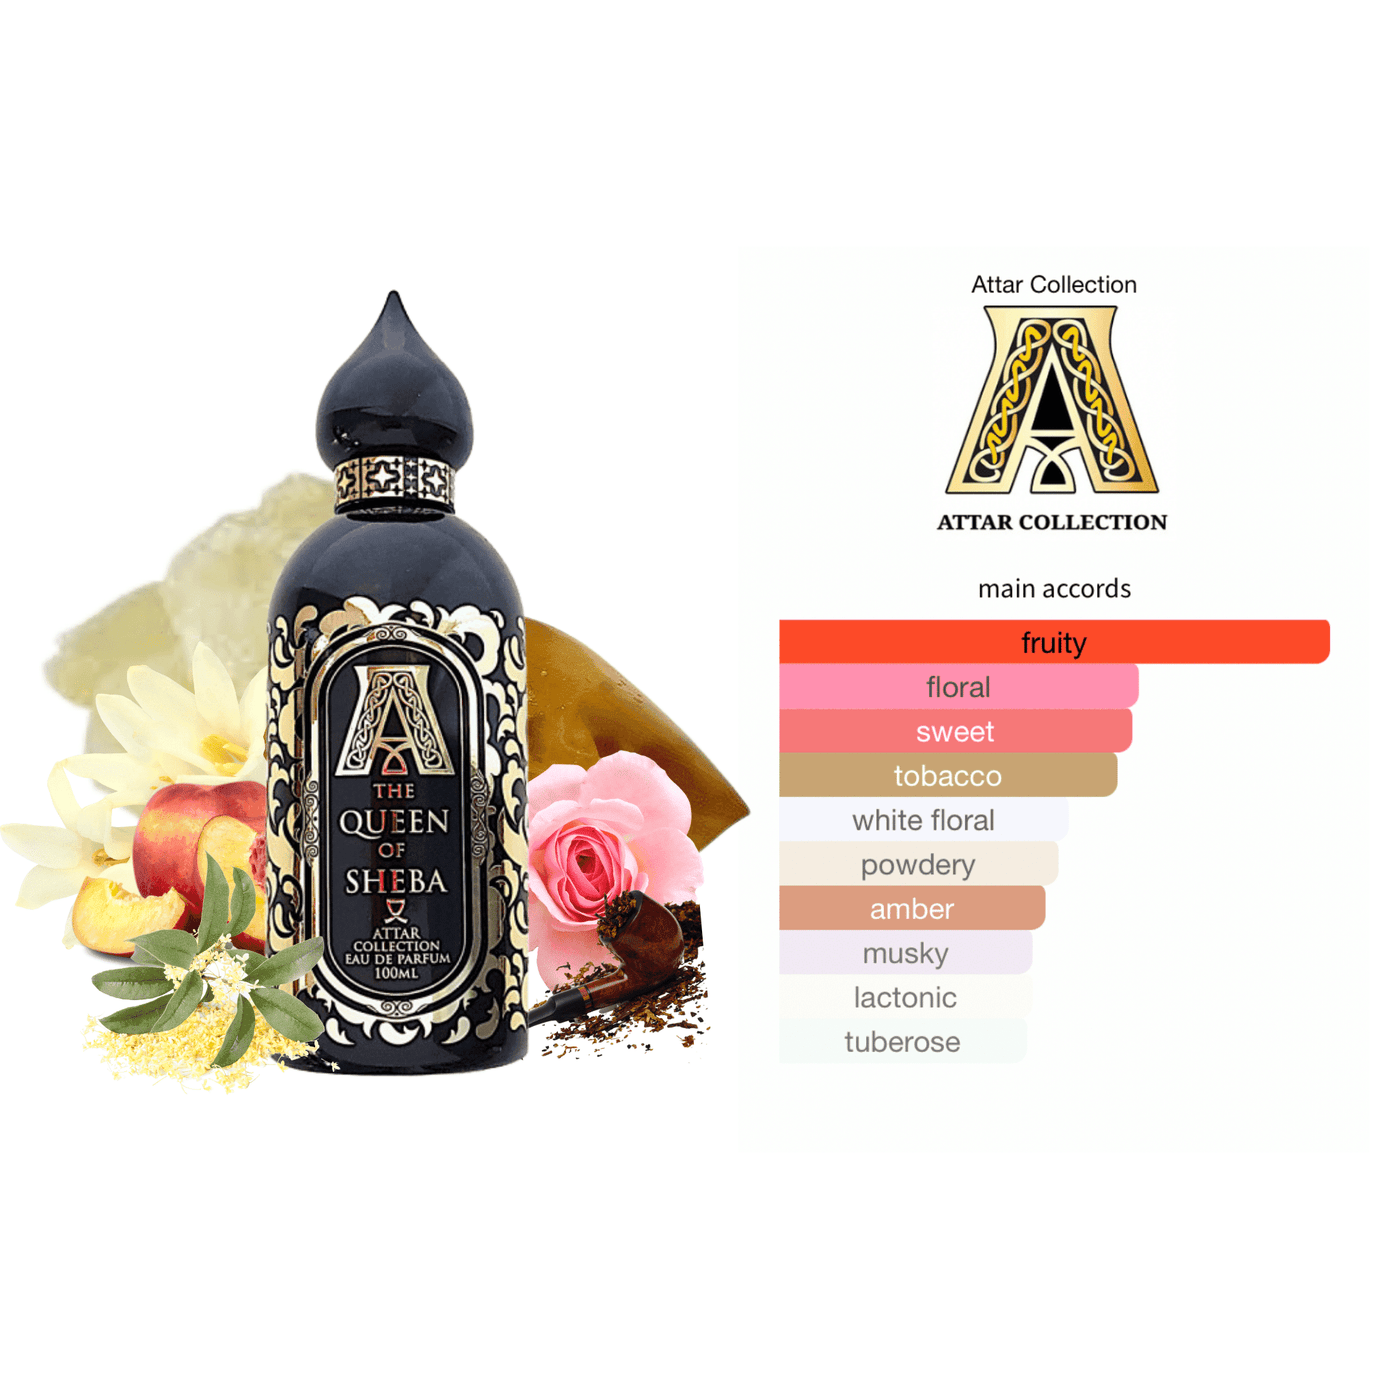 the Queen of Sheba attar collection perfume